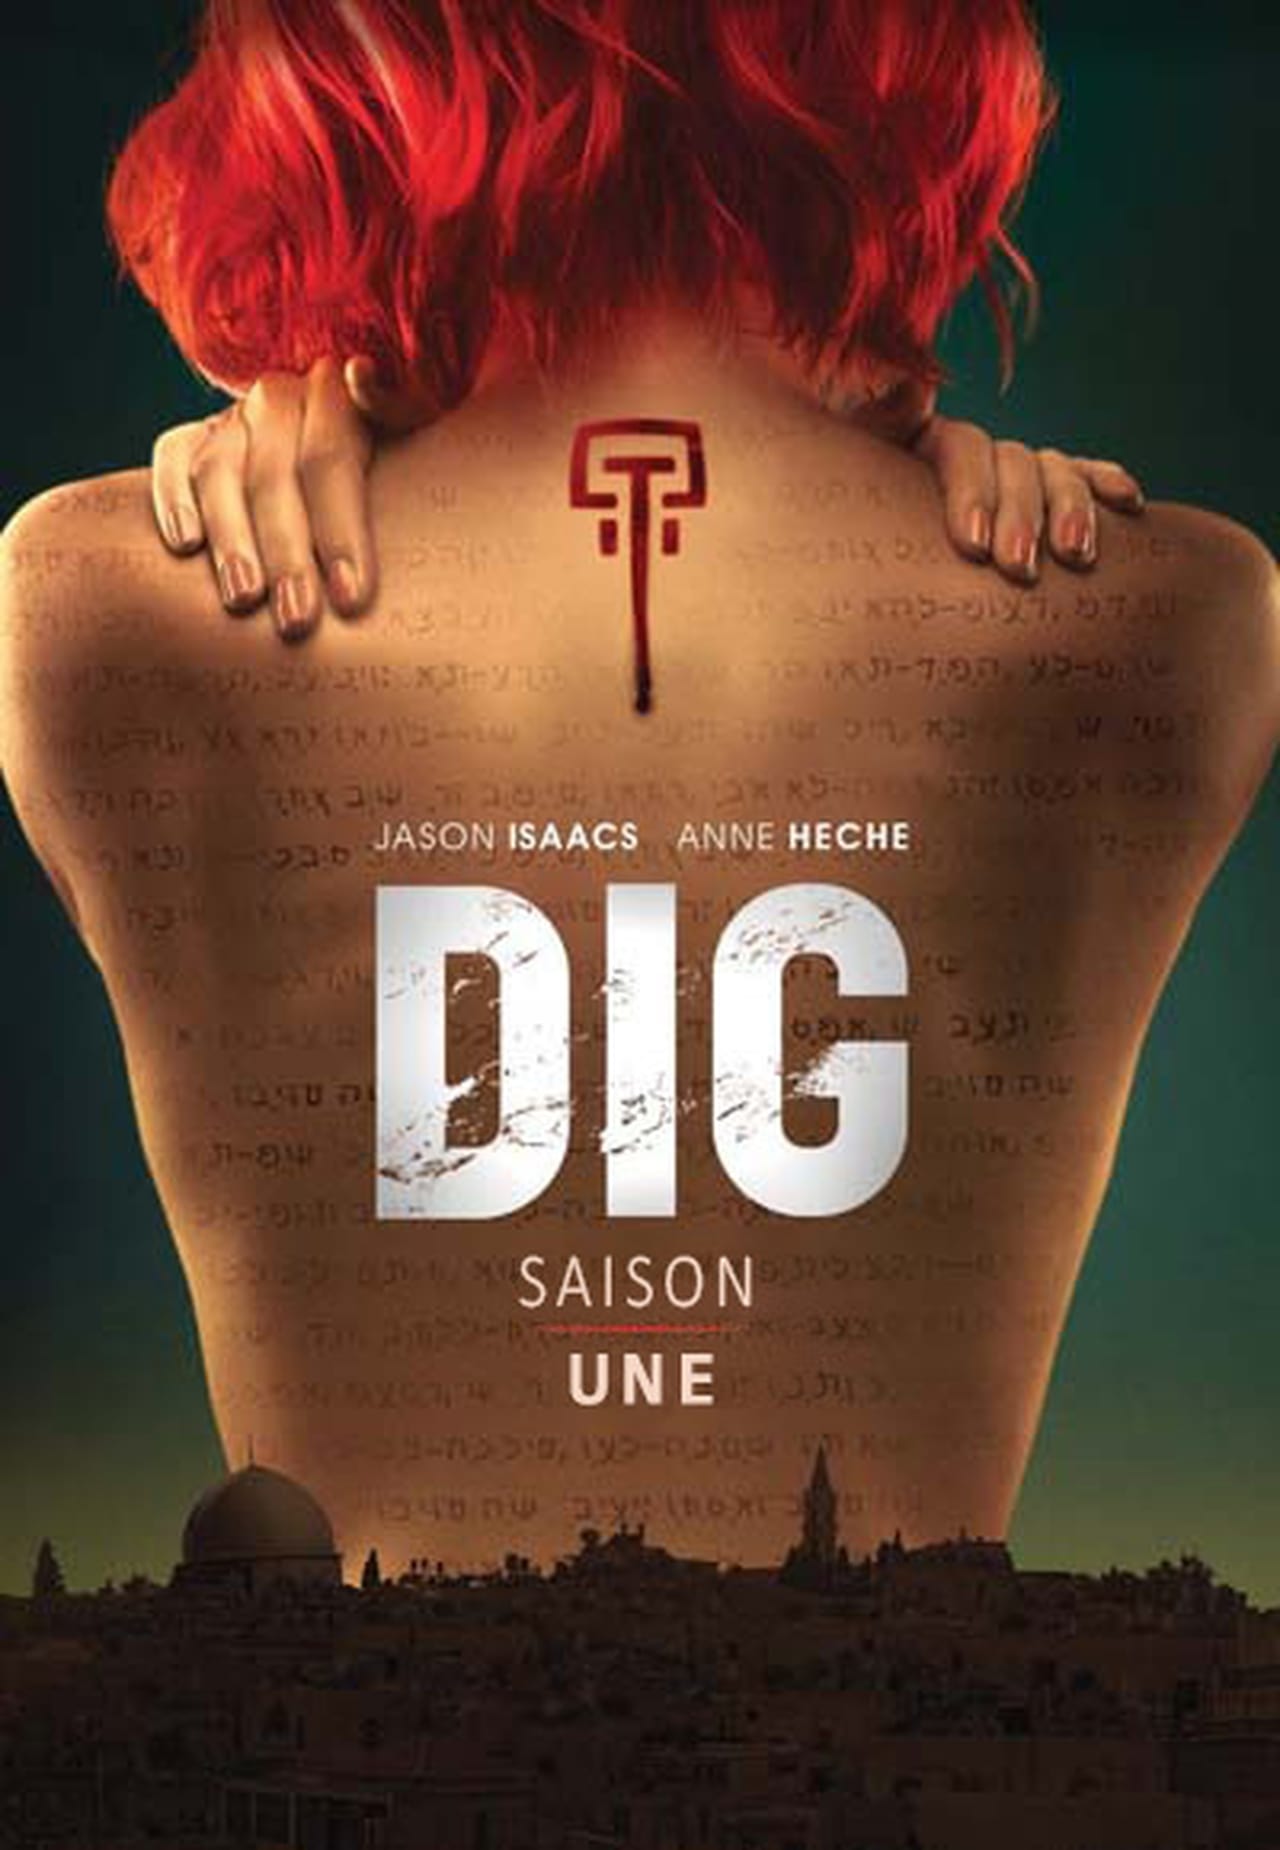 Dig Season 1